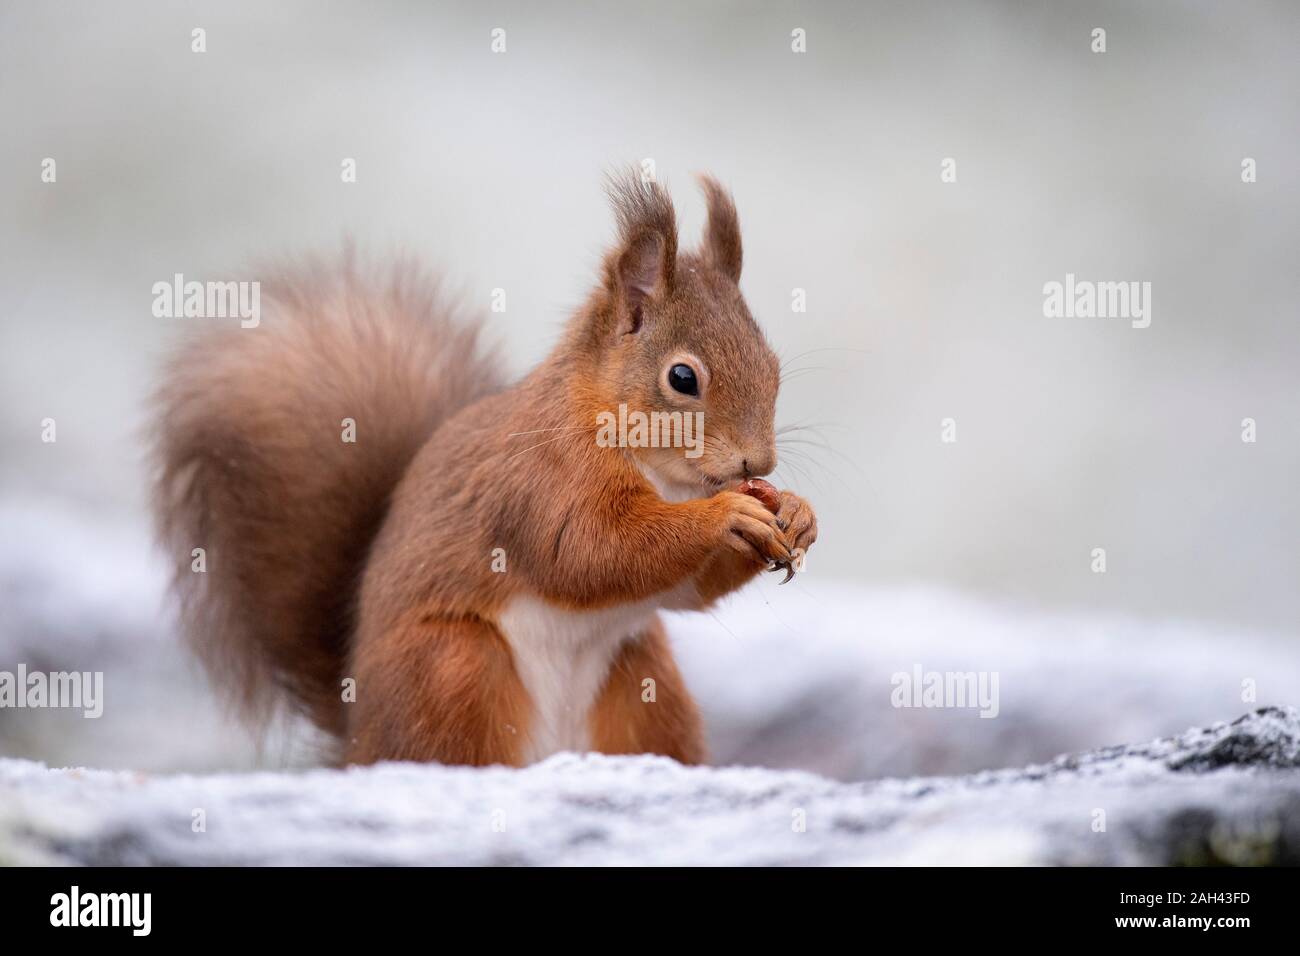 Portrait de l'Écureuil rouge noisette manger en hiver Banque D'Images